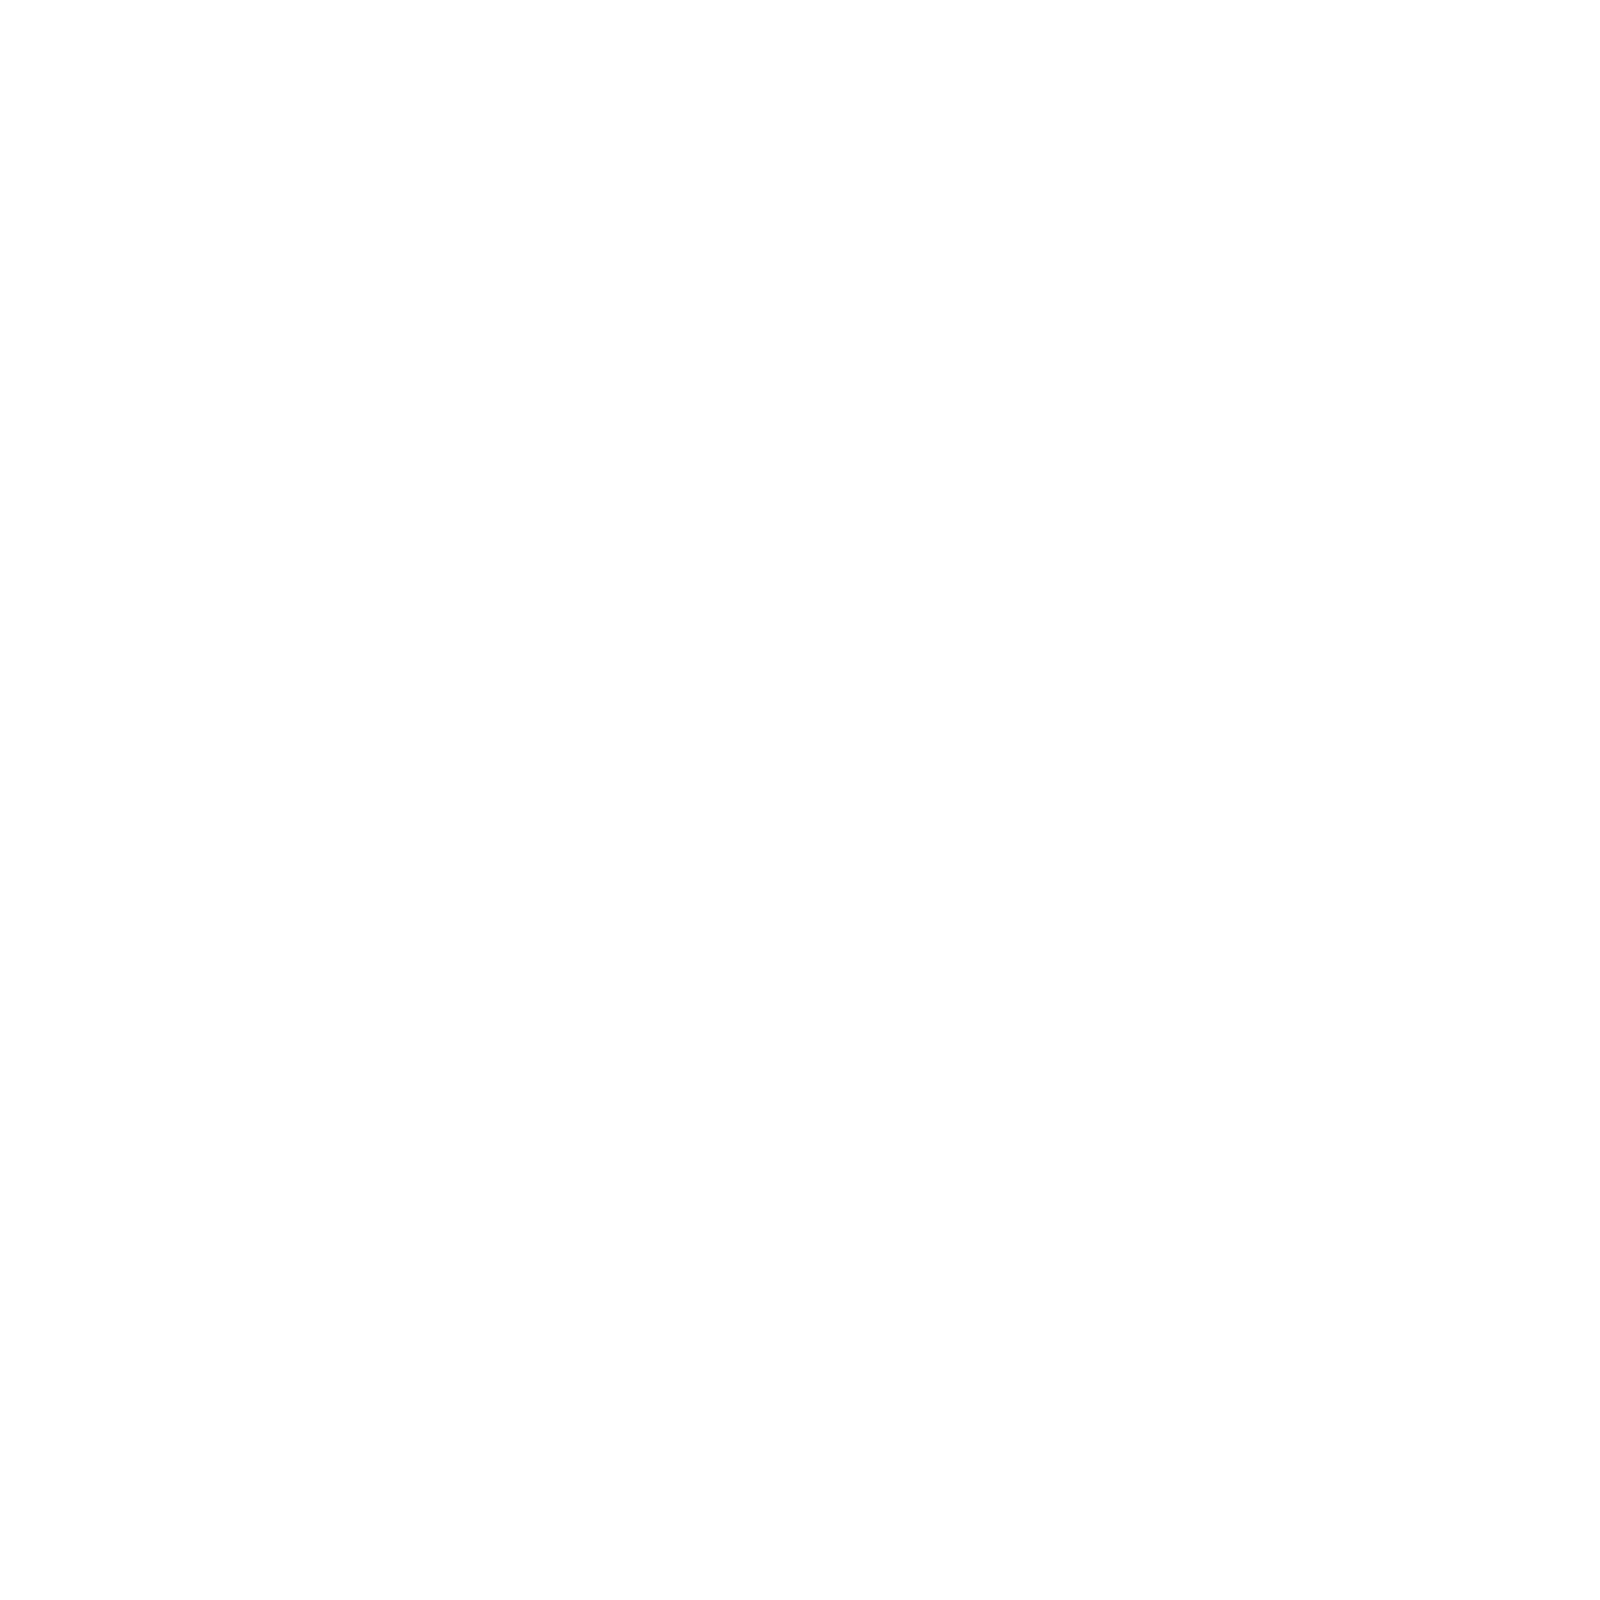 an-up-arrow-icon